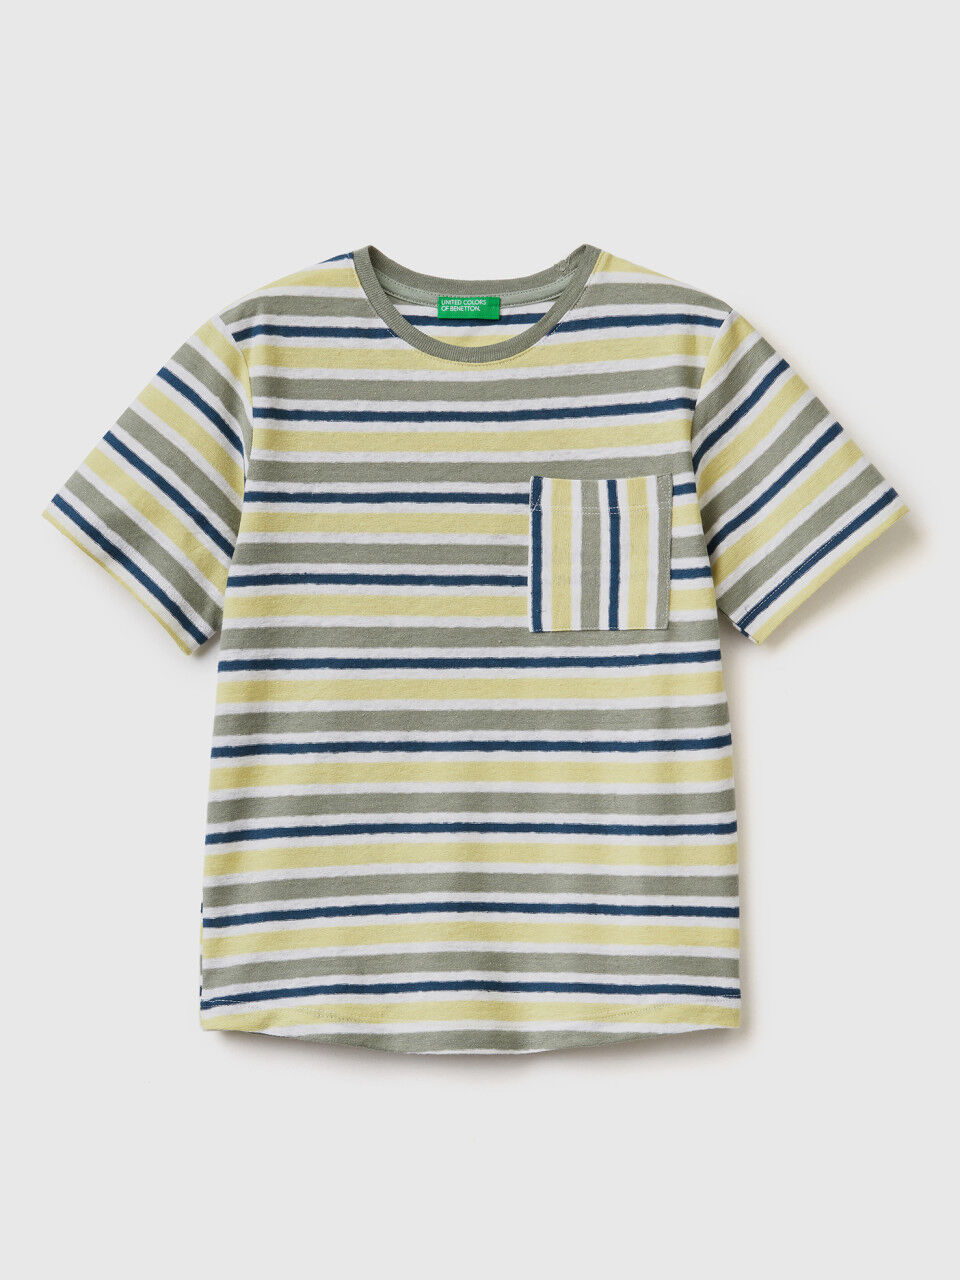 Striped t-shirt in linen blend